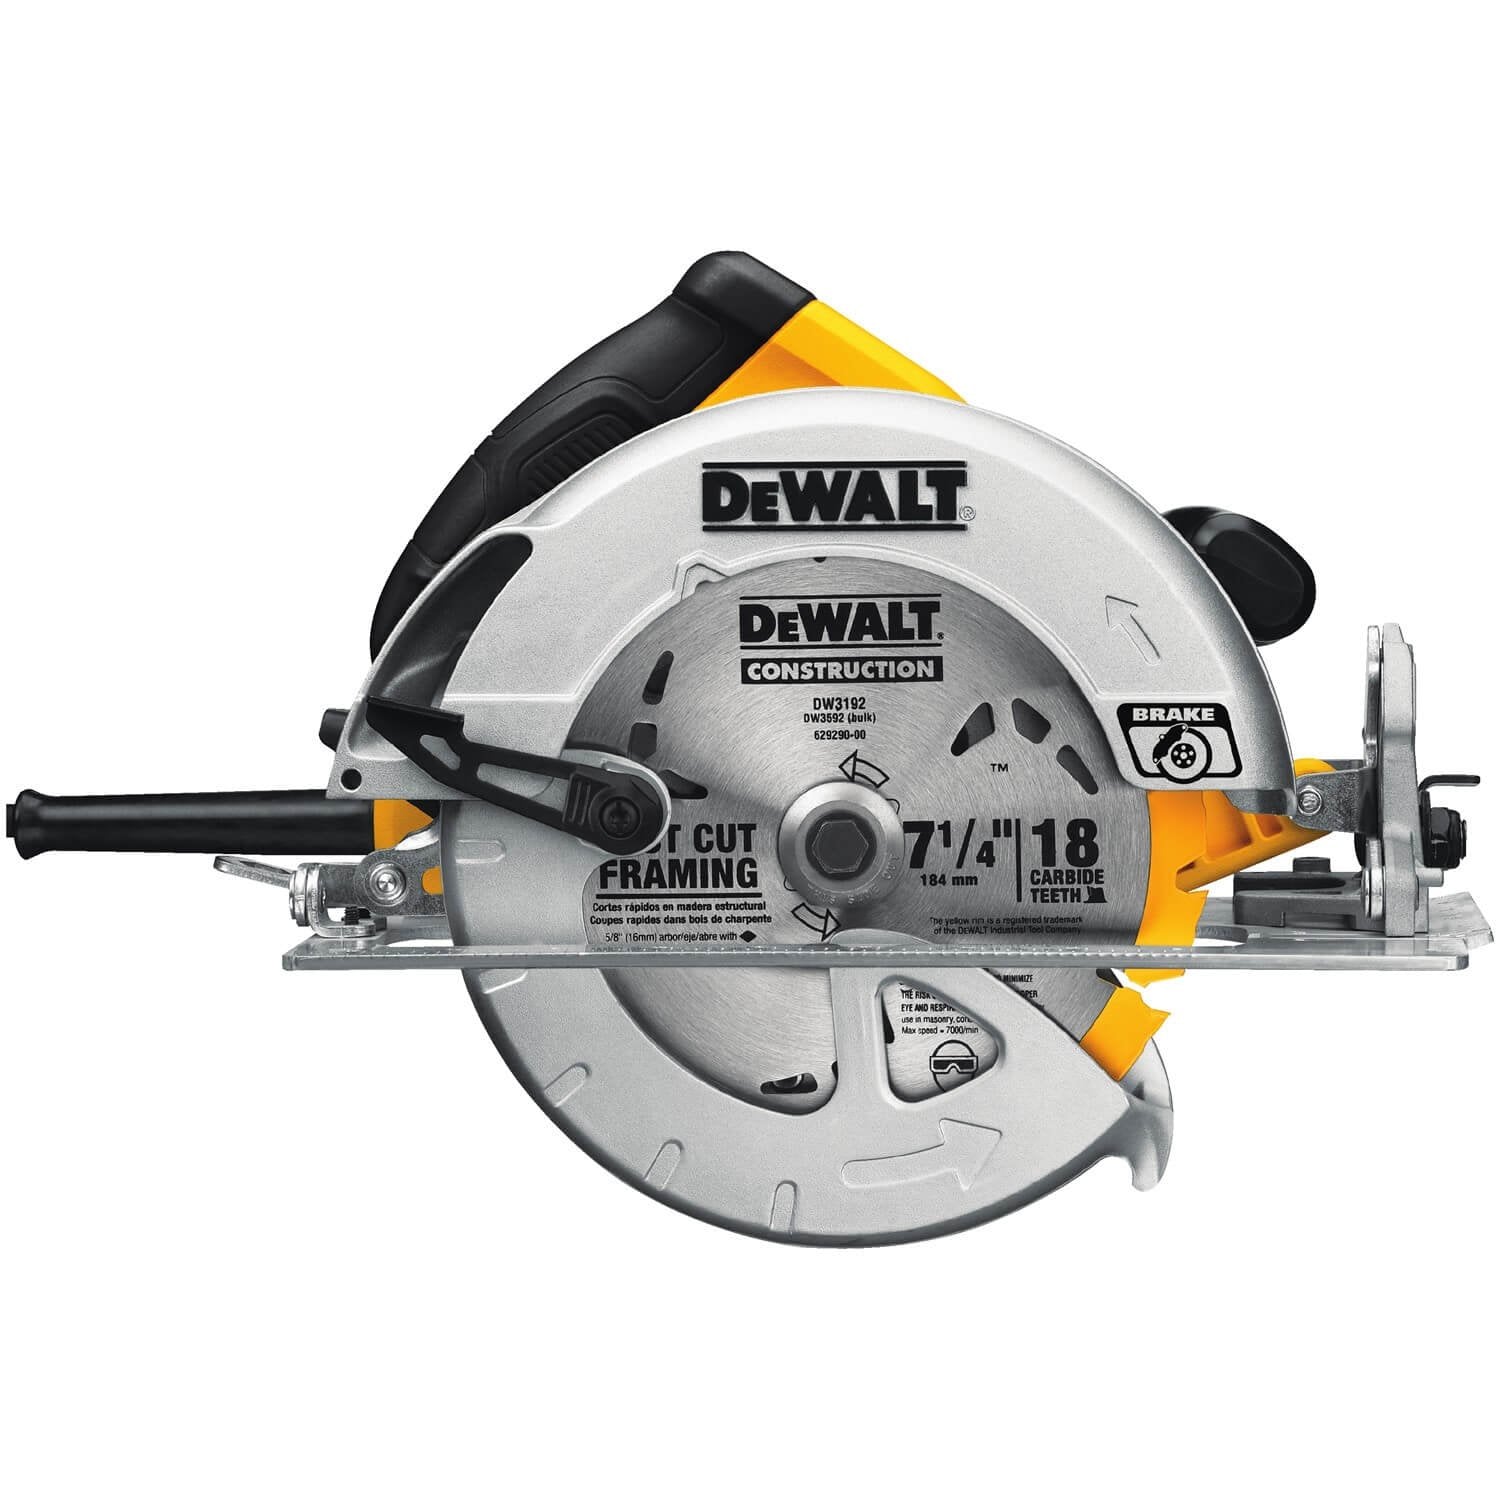 DEWALT DWE575SB - 7-1/4" Circular Saw with Electric Brake